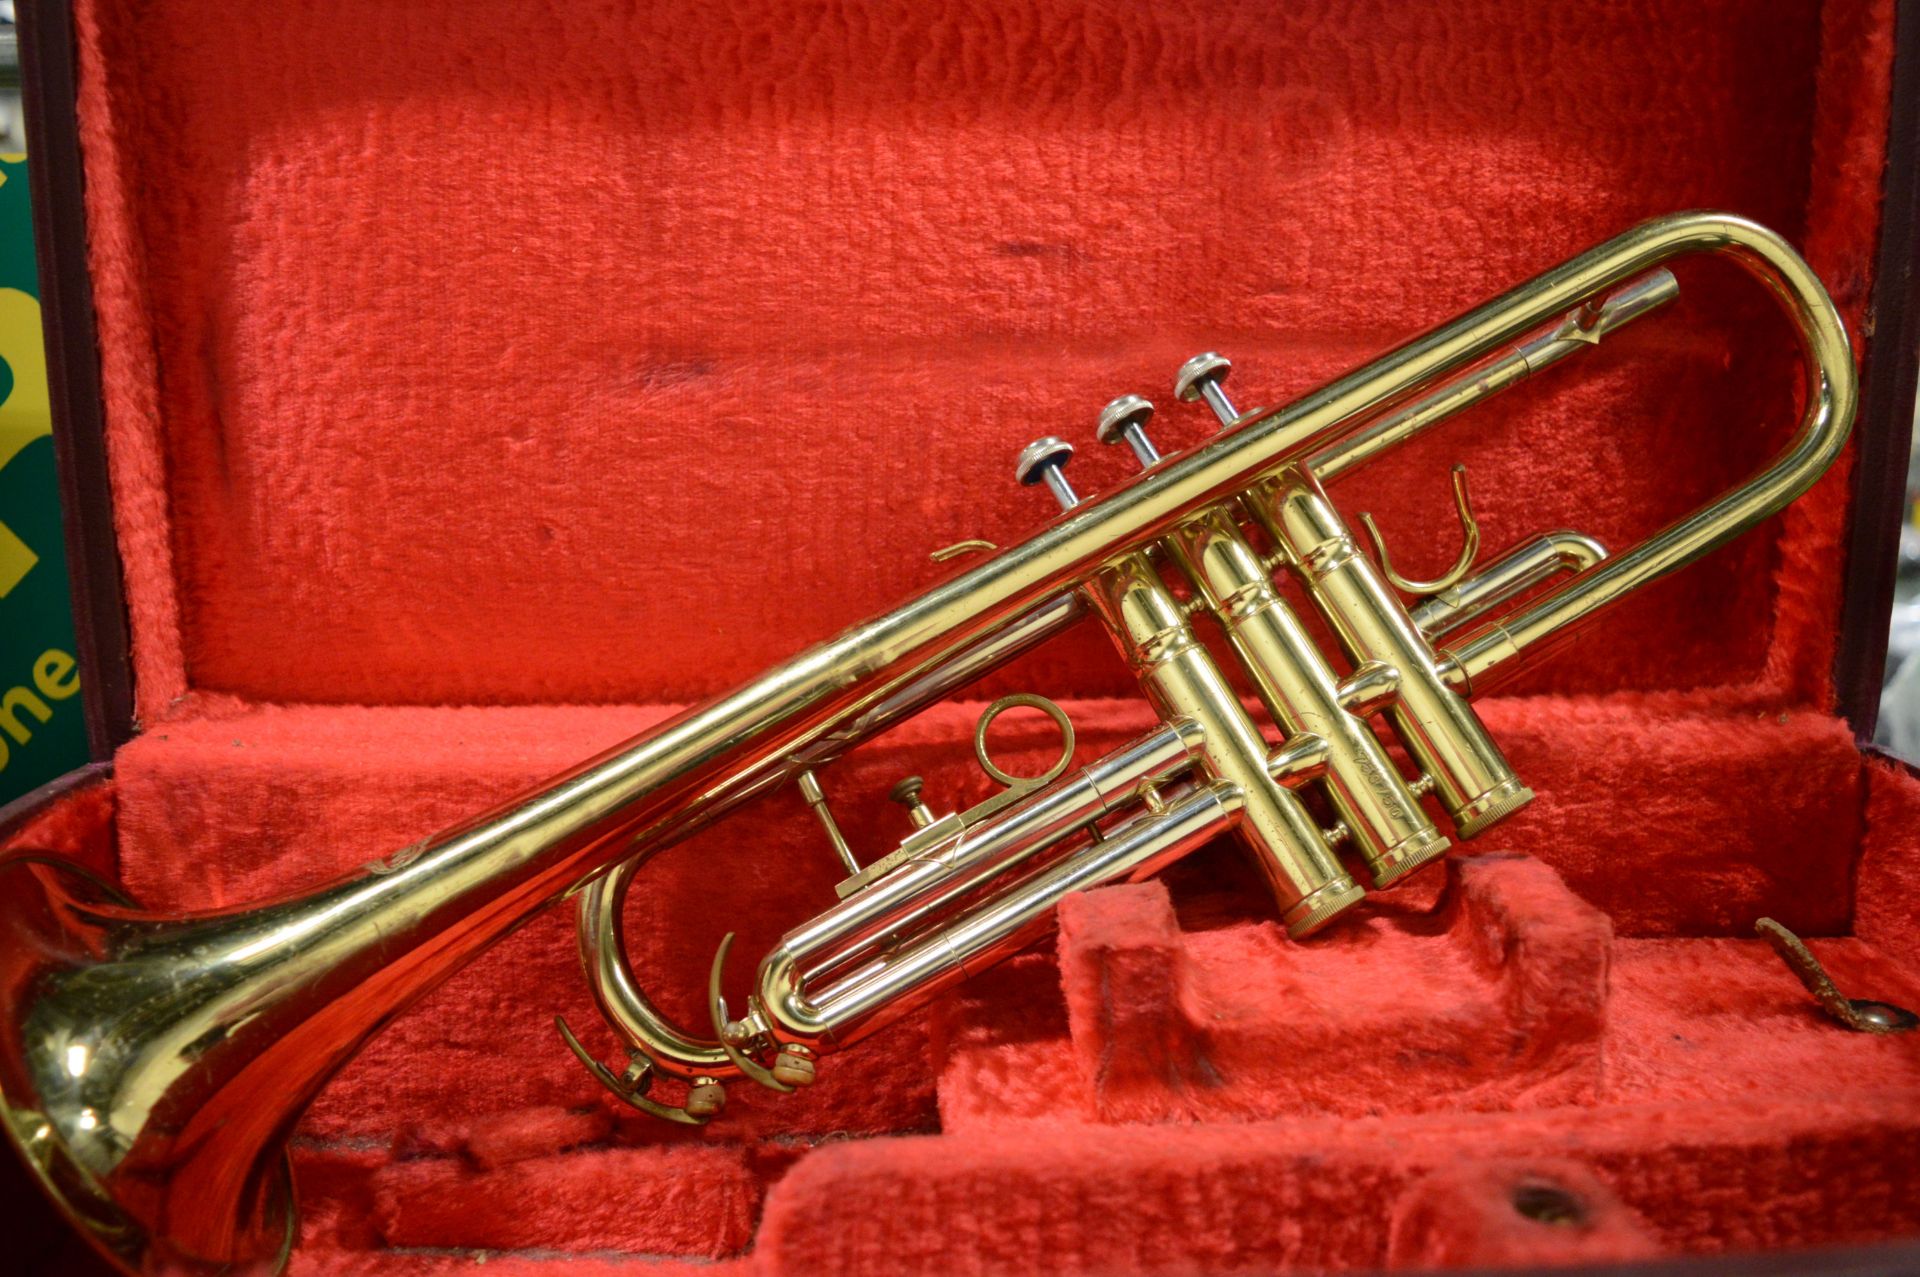 Corton Trumpet in Case. - Image 2 of 2